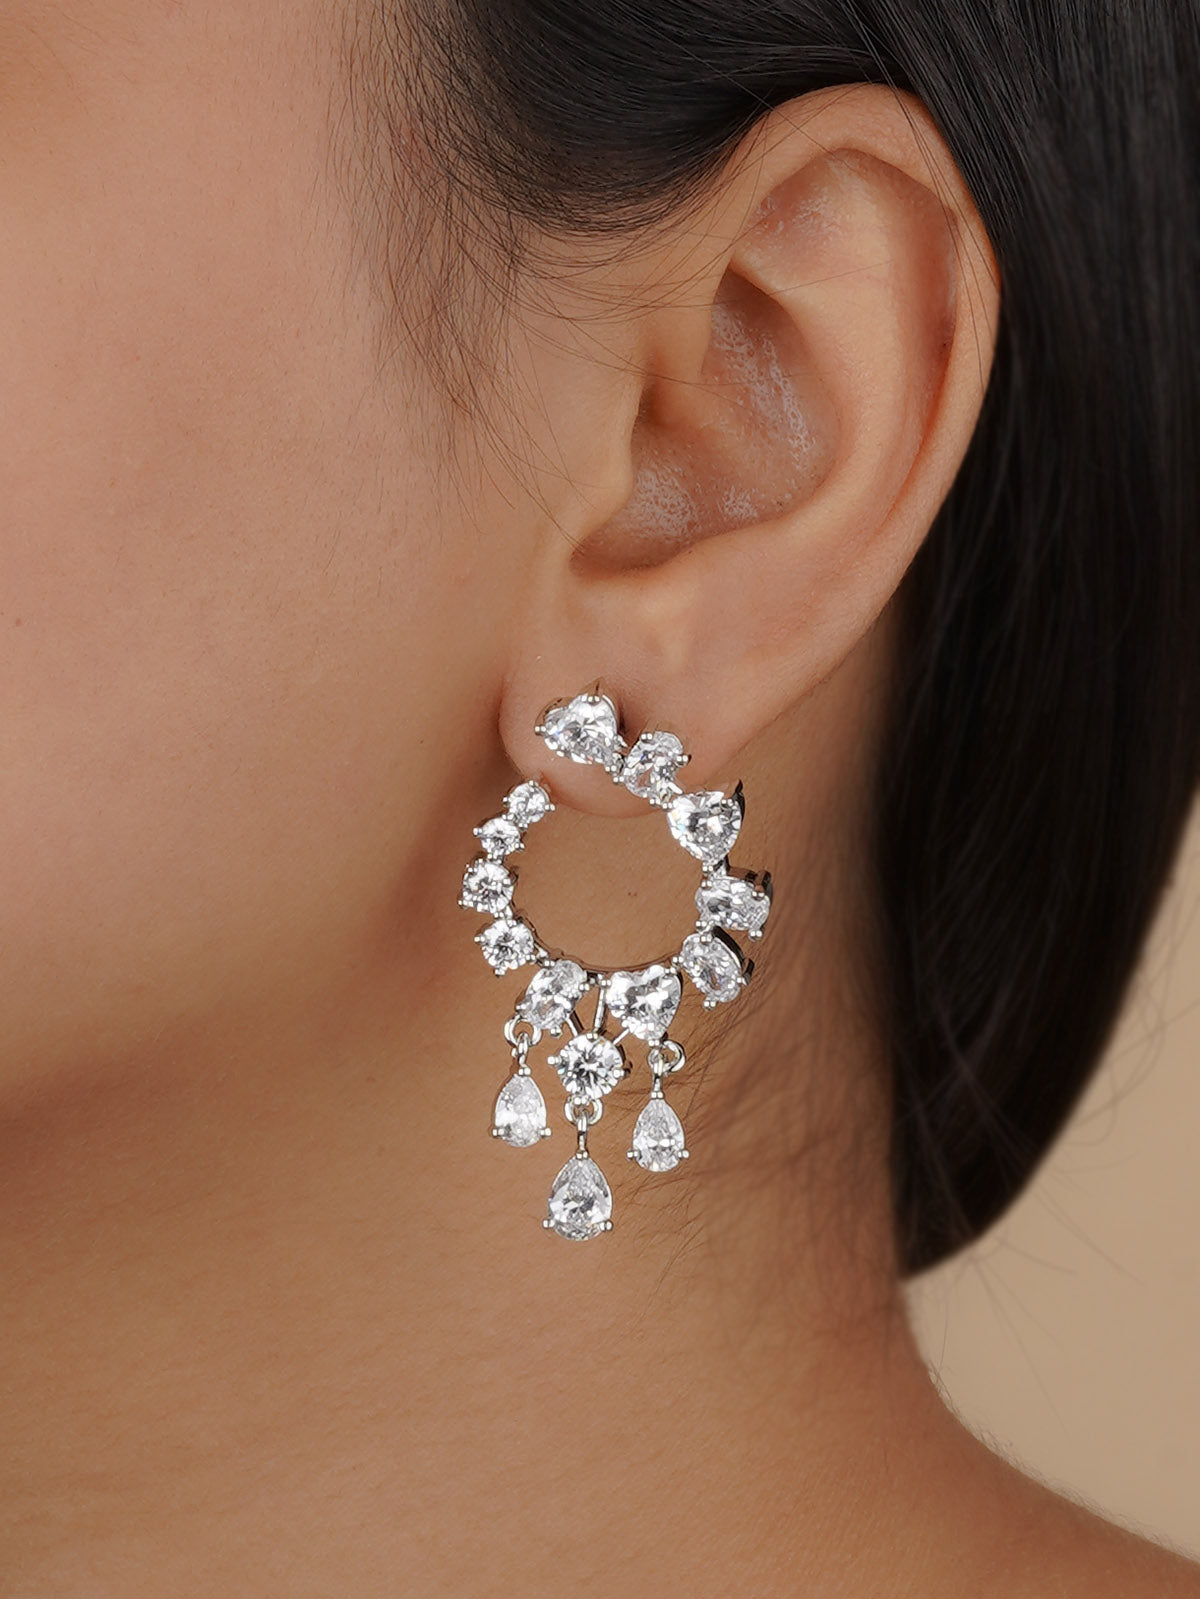 CZEAR535 - Silver Plated Faux Diamond Earrings